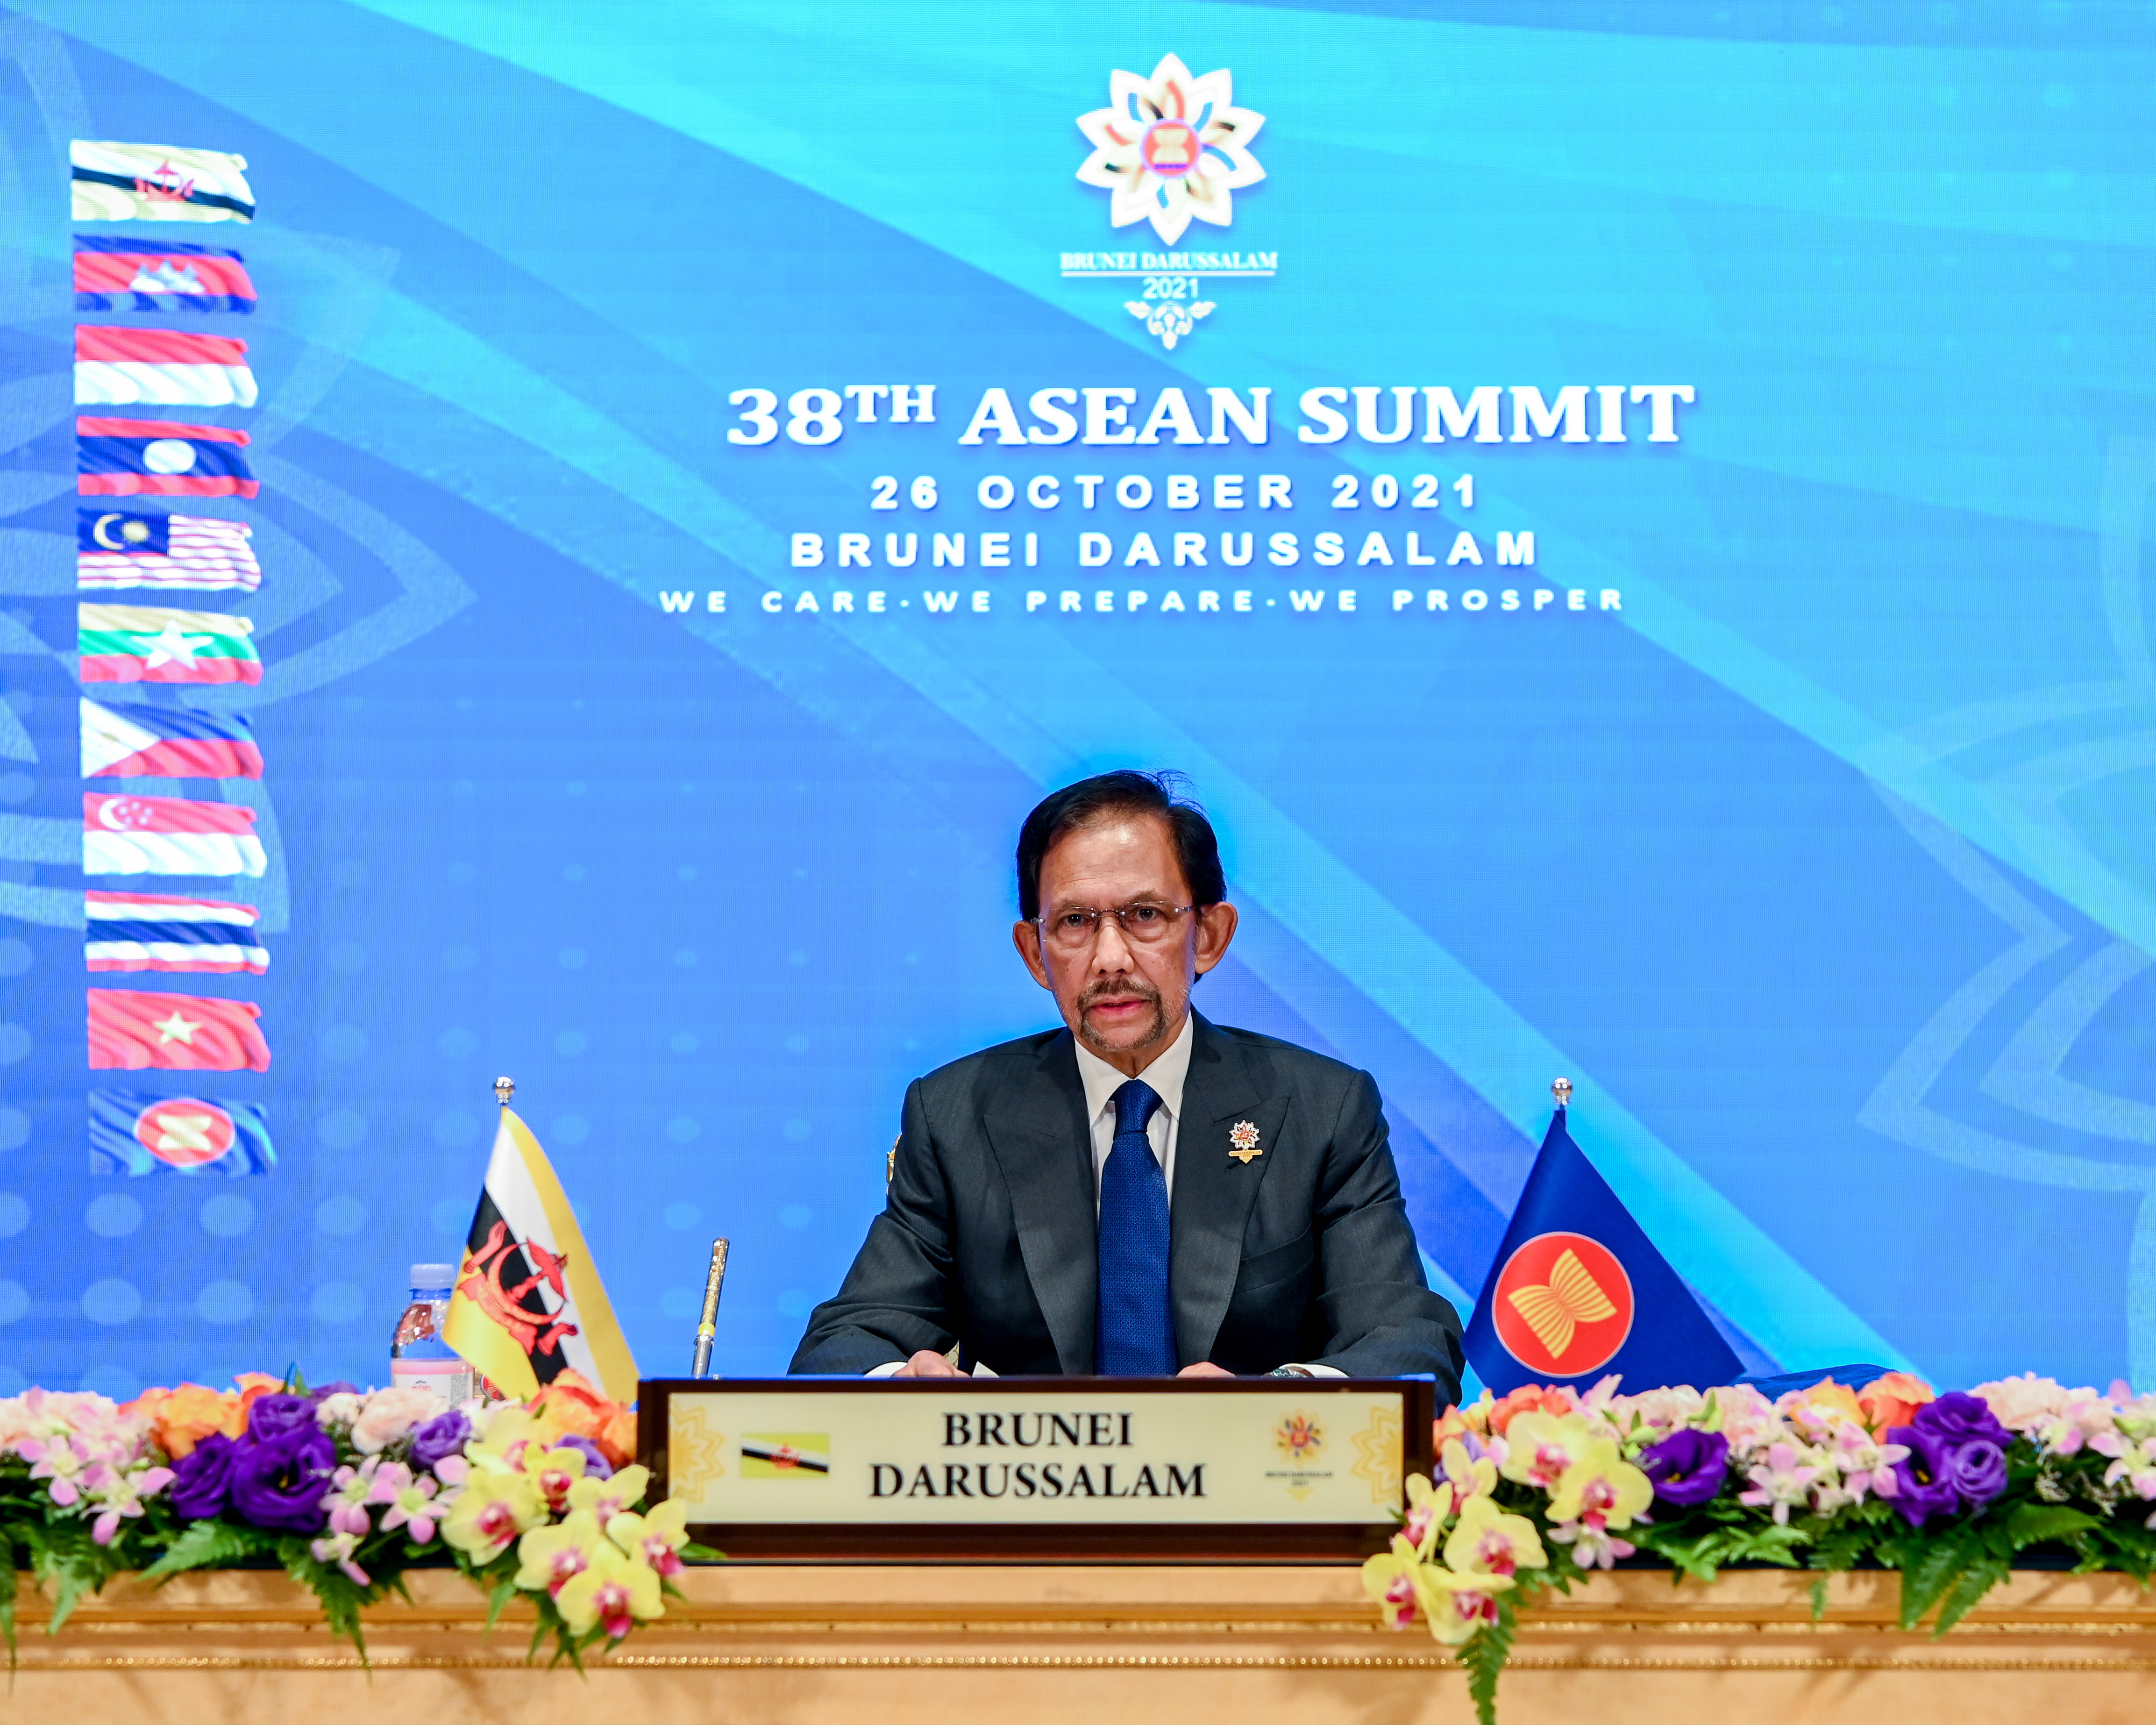 Brunei's Sultan Hassanal Bolkiah speaks during the virtual ASEAN Summit, hosted by ASEAN Summit Brunei, in Bandar Seri Begawan